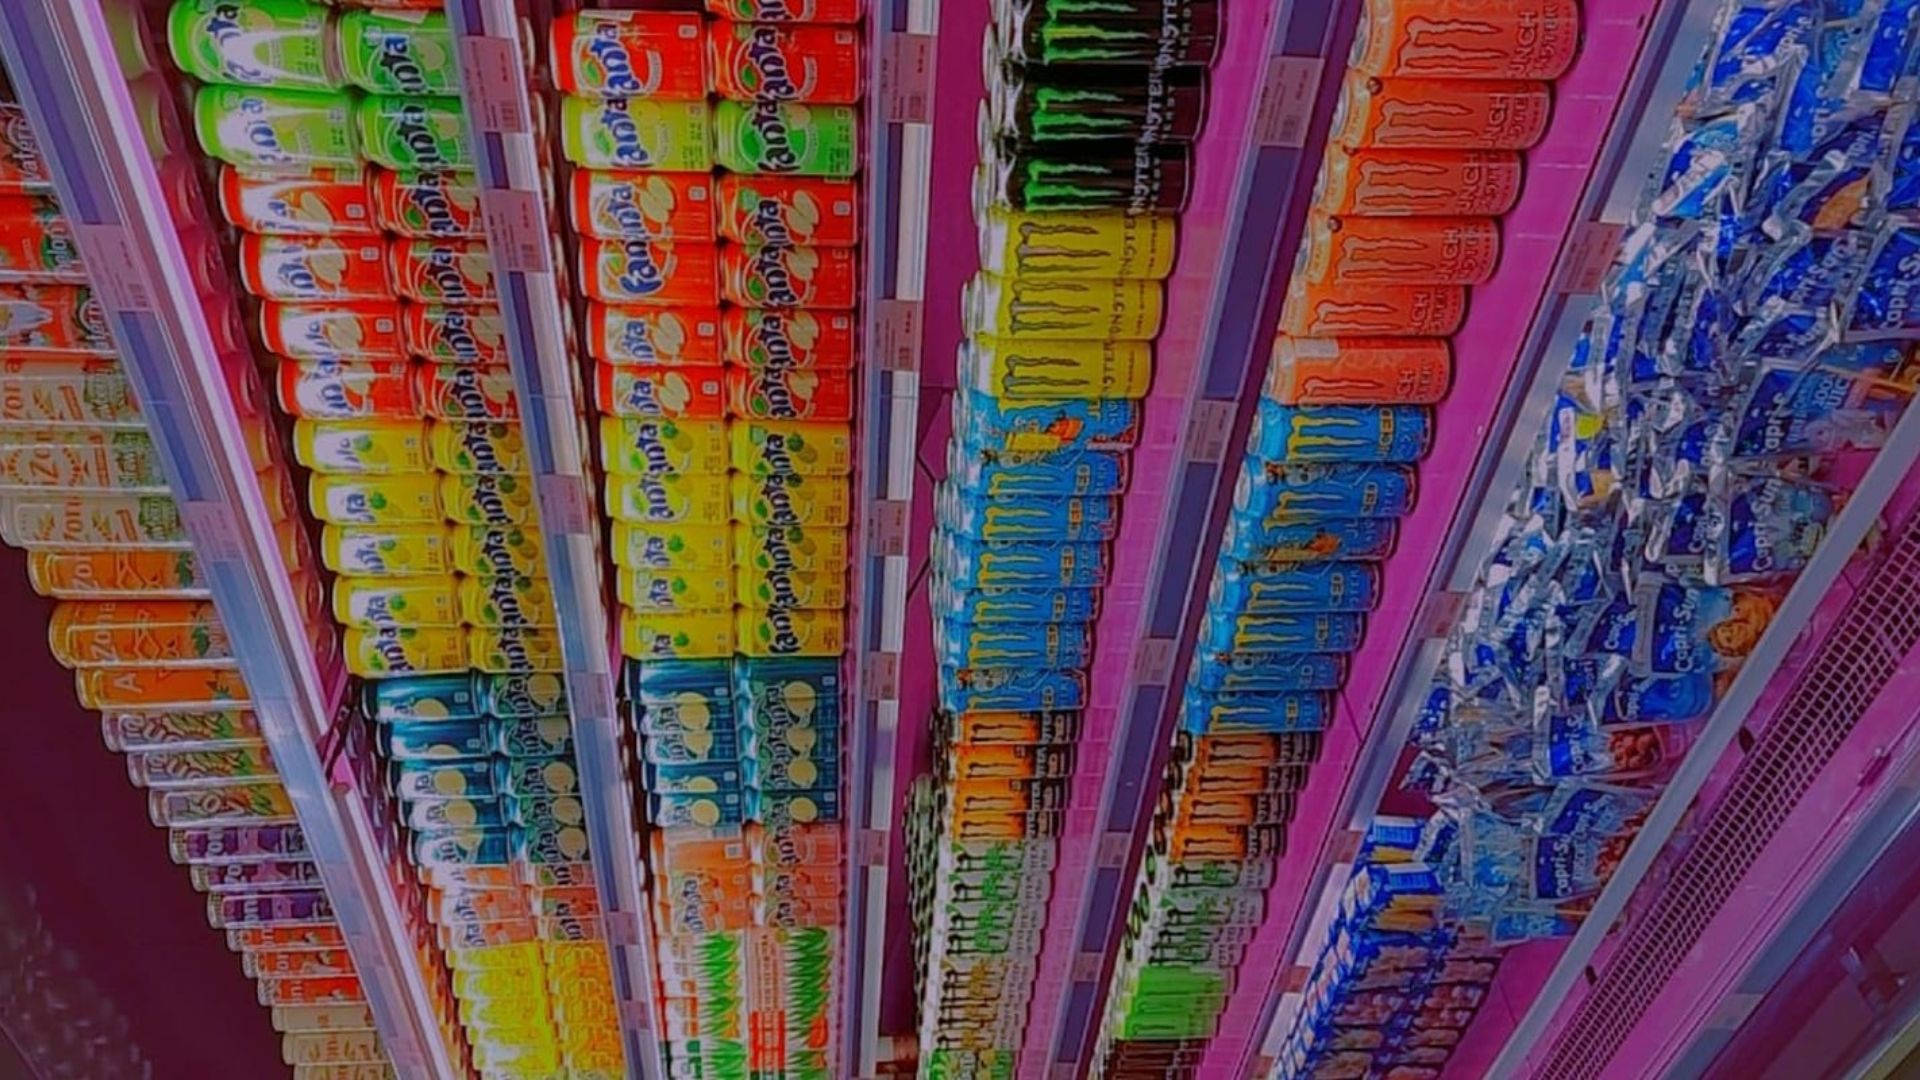 Refrescantessodas Coloridas En La Tienda De Comestibles. Fondo de pantalla